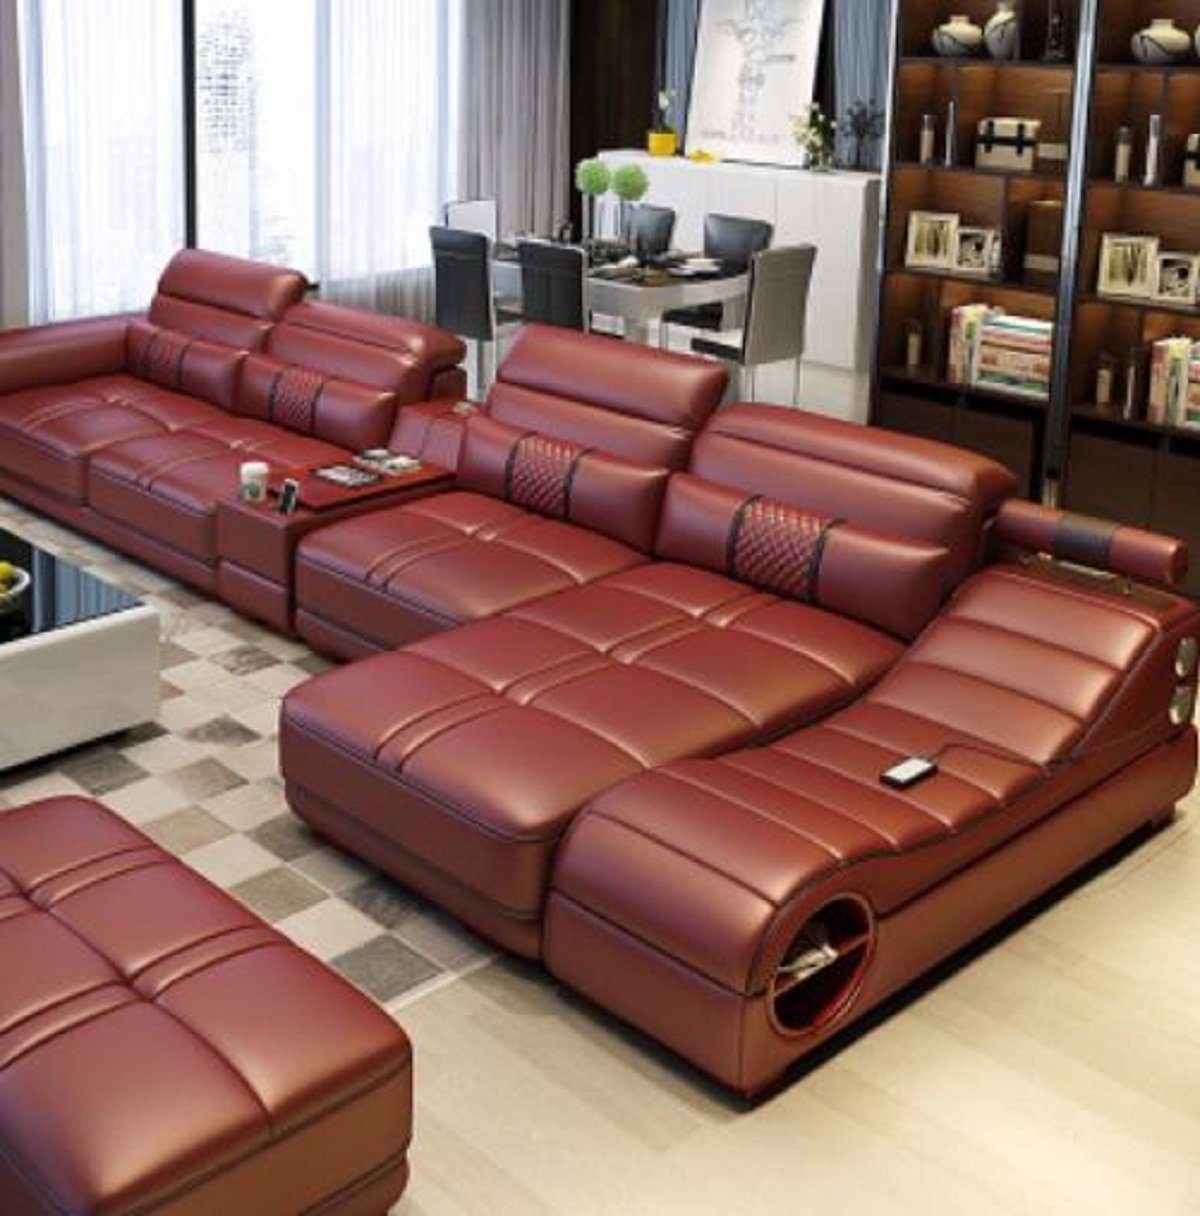 JVmoebel Ecksofa, Wohnlandschaft Luxus Sofa Couch Ecksofa L-form Polster Modern Relax Braun